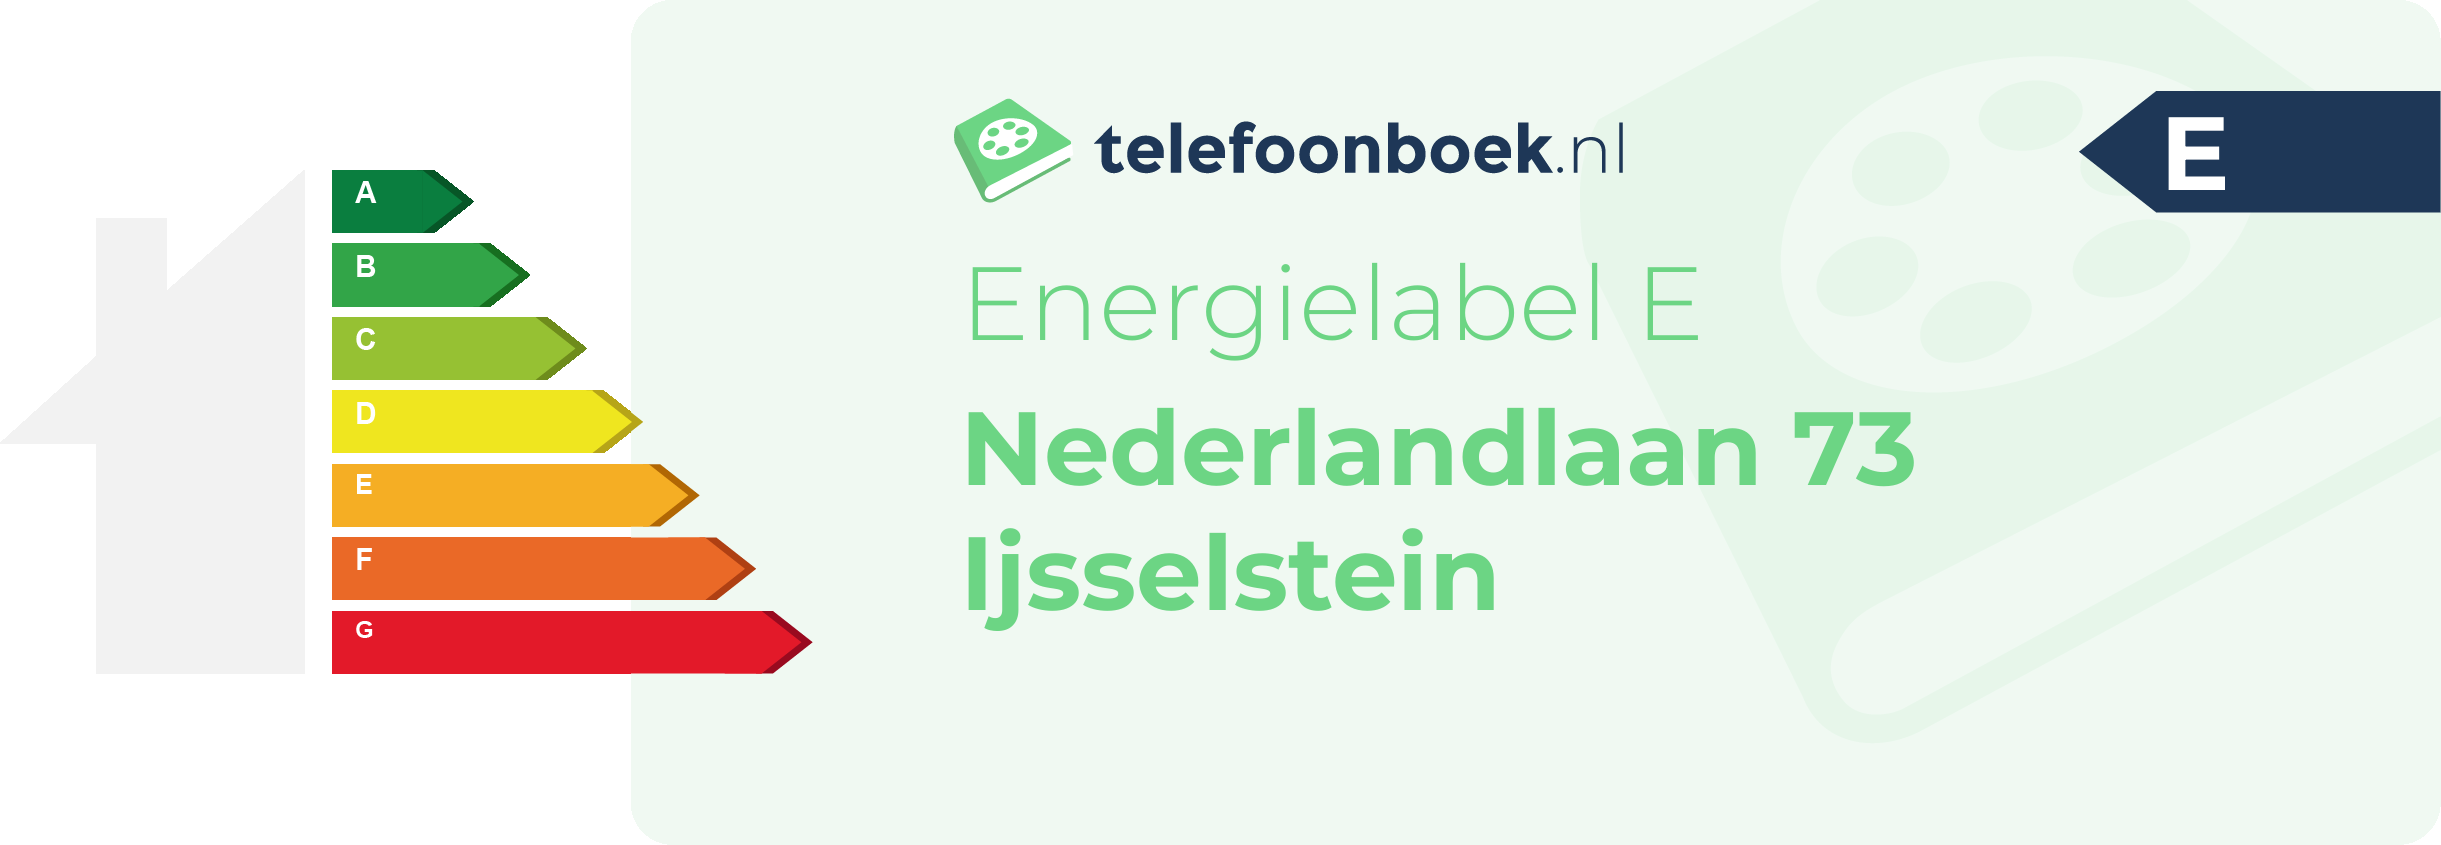 Energielabel Nederlandlaan 73 Ijsselstein